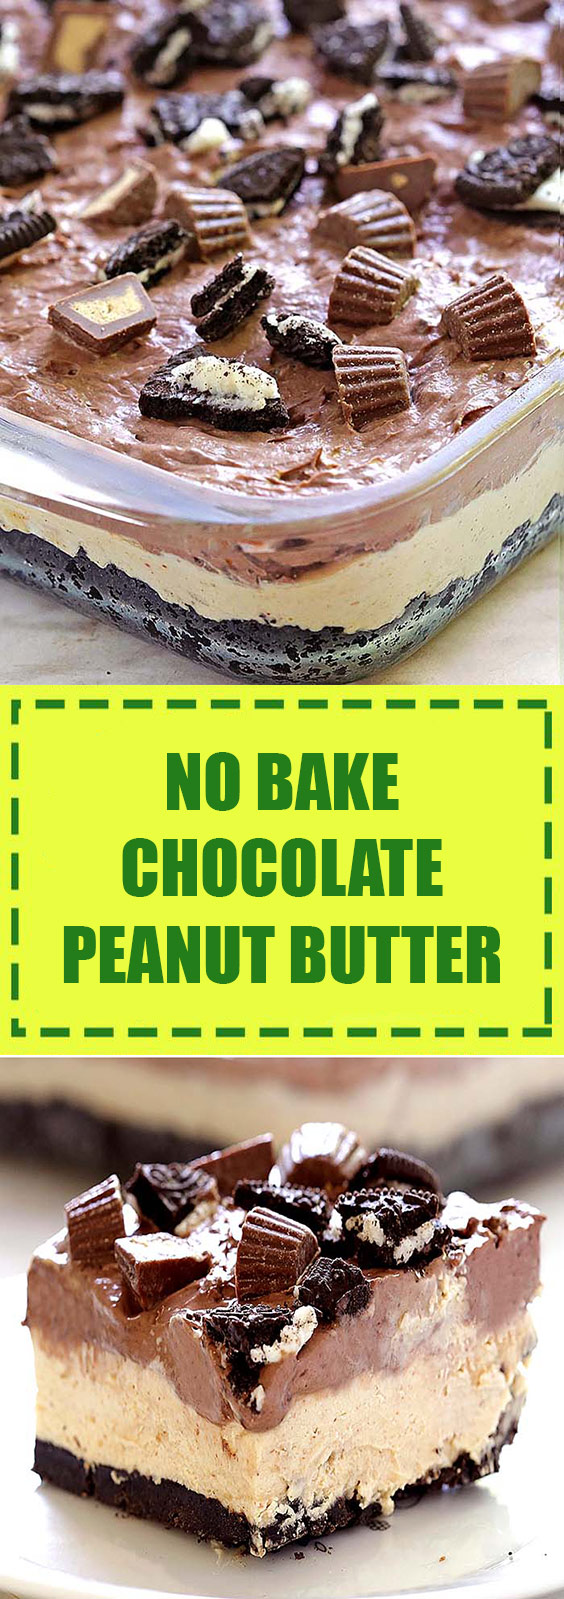 No Bake Chocolate Peanut Butter Dessert